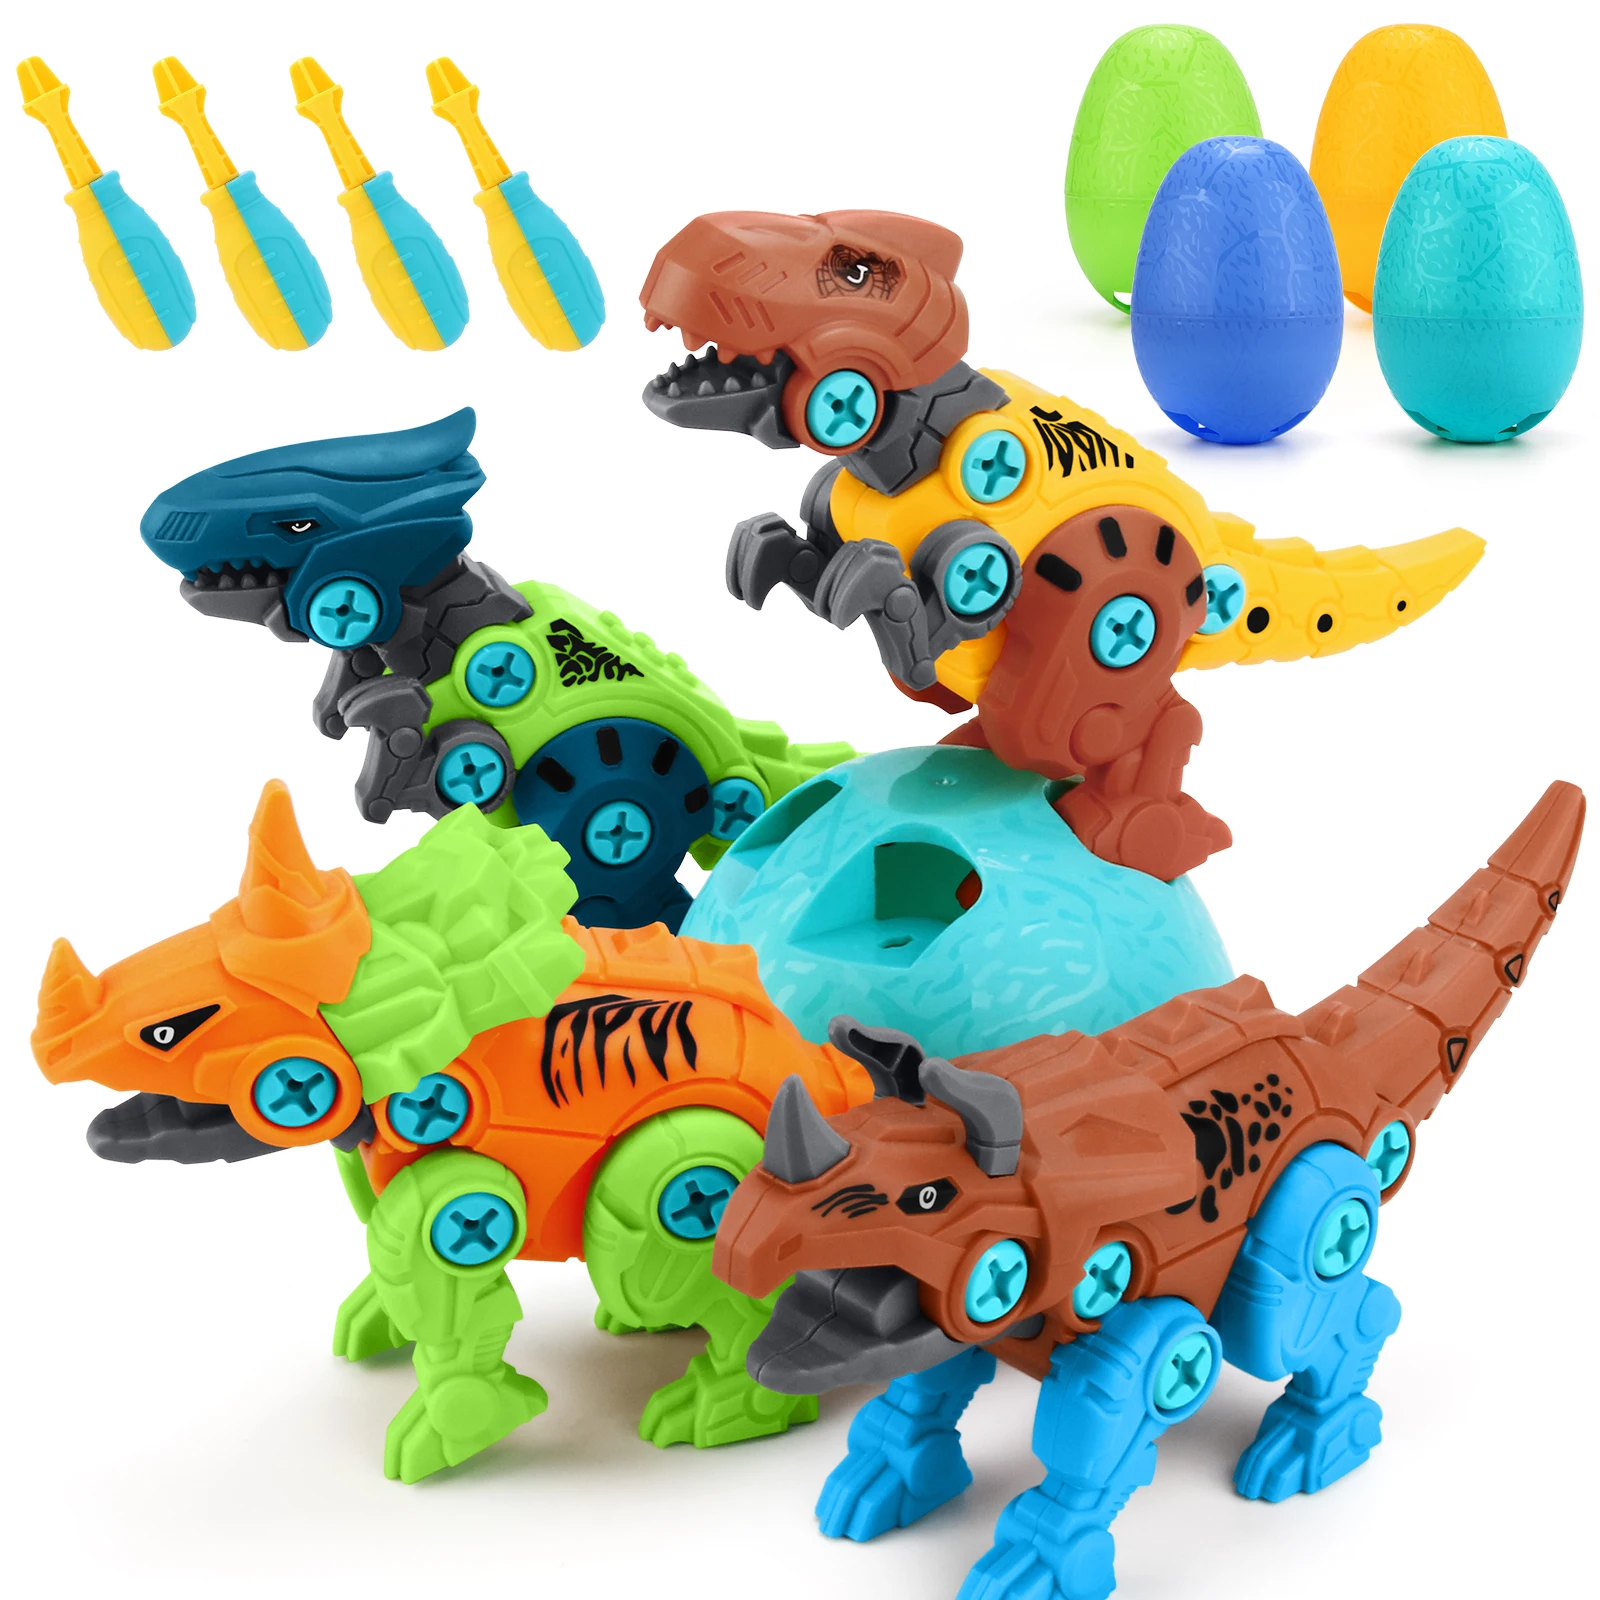 

Конструктор «сделай сам», разборка, модель динозавра, набор игрушек, винтовая гайка в сборе, пластиковые блоки, Игрушки для раннего развития...